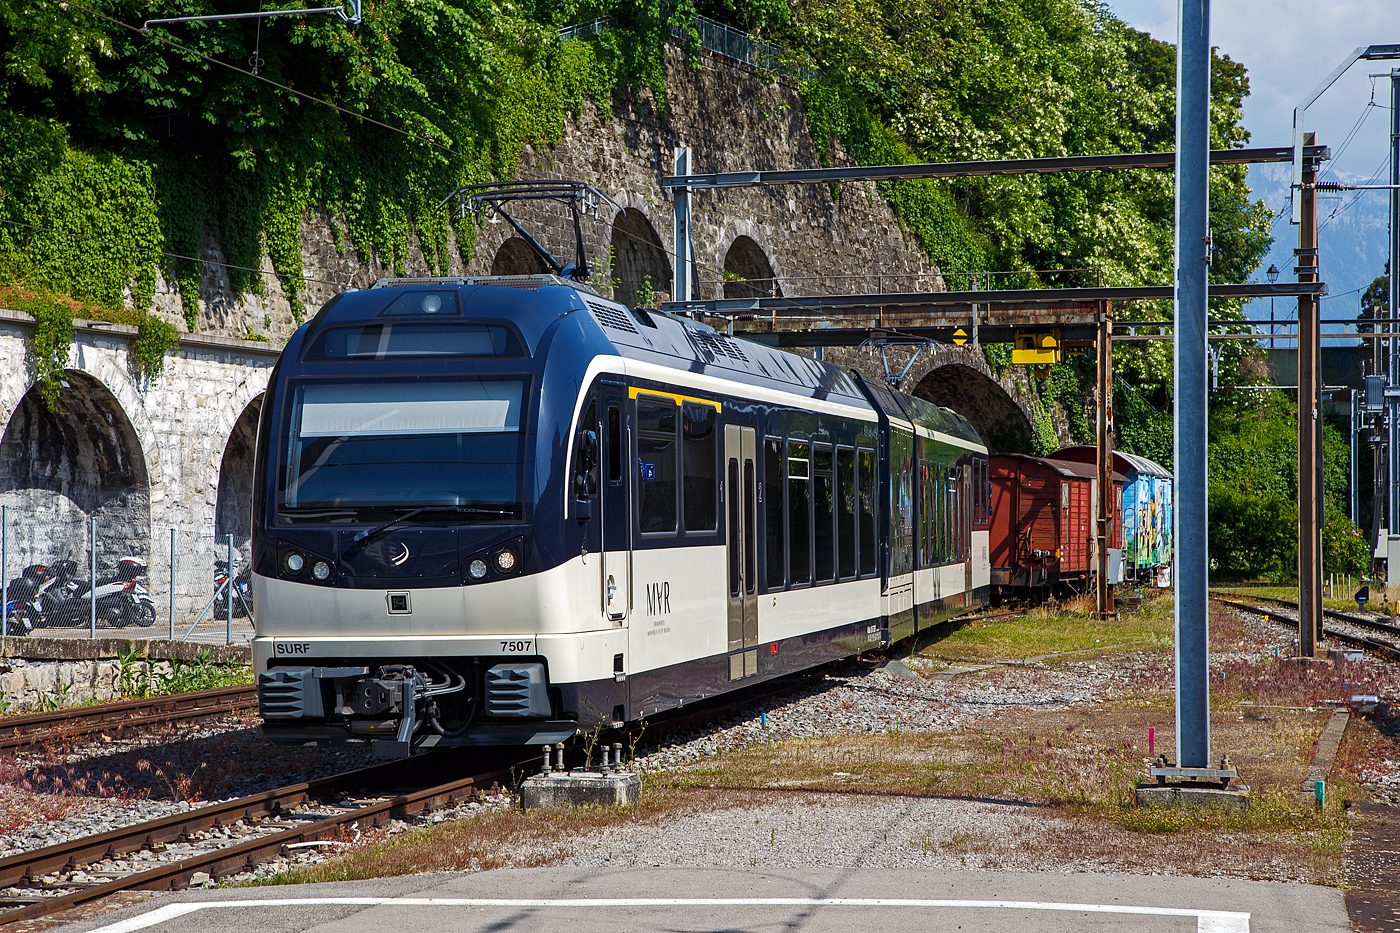 Der MVR (ex CEV) SURF ABeh 2/6 7507 ist am 26 Mai 2023 beim Bahnhof Vevey abgestellt.

SURF steht für Série Unifiée Romande pour Réseau Ferré métrique (Einheitliche Serie für das Westschweizer Meterspurige Schienennetz). Diese ab 2015 gebaute meterspurige Triebzüge mit gemischtem Adhäsions- und Zahnradbetrieb gehören zu den Stadler GTW der 4. Generation.
